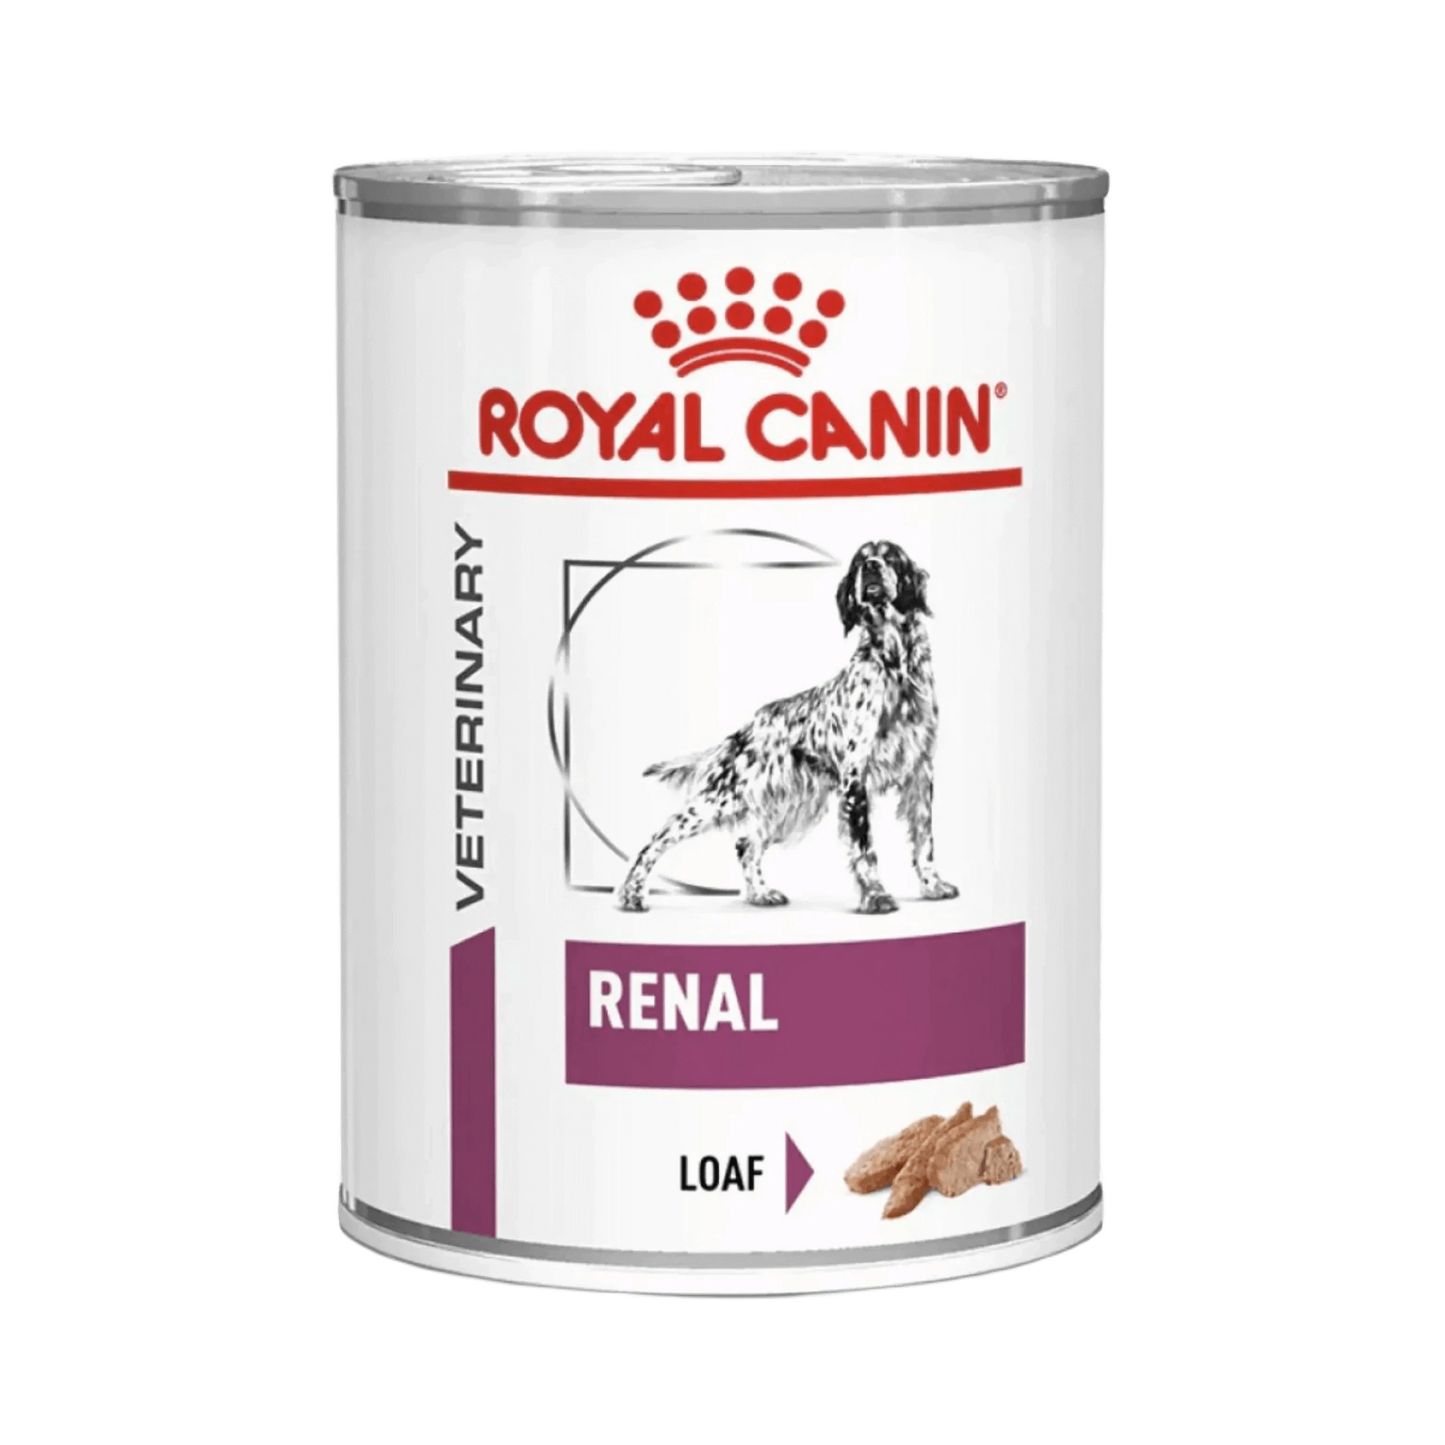 RC RENAL DOG CAN FOOD - Animeal